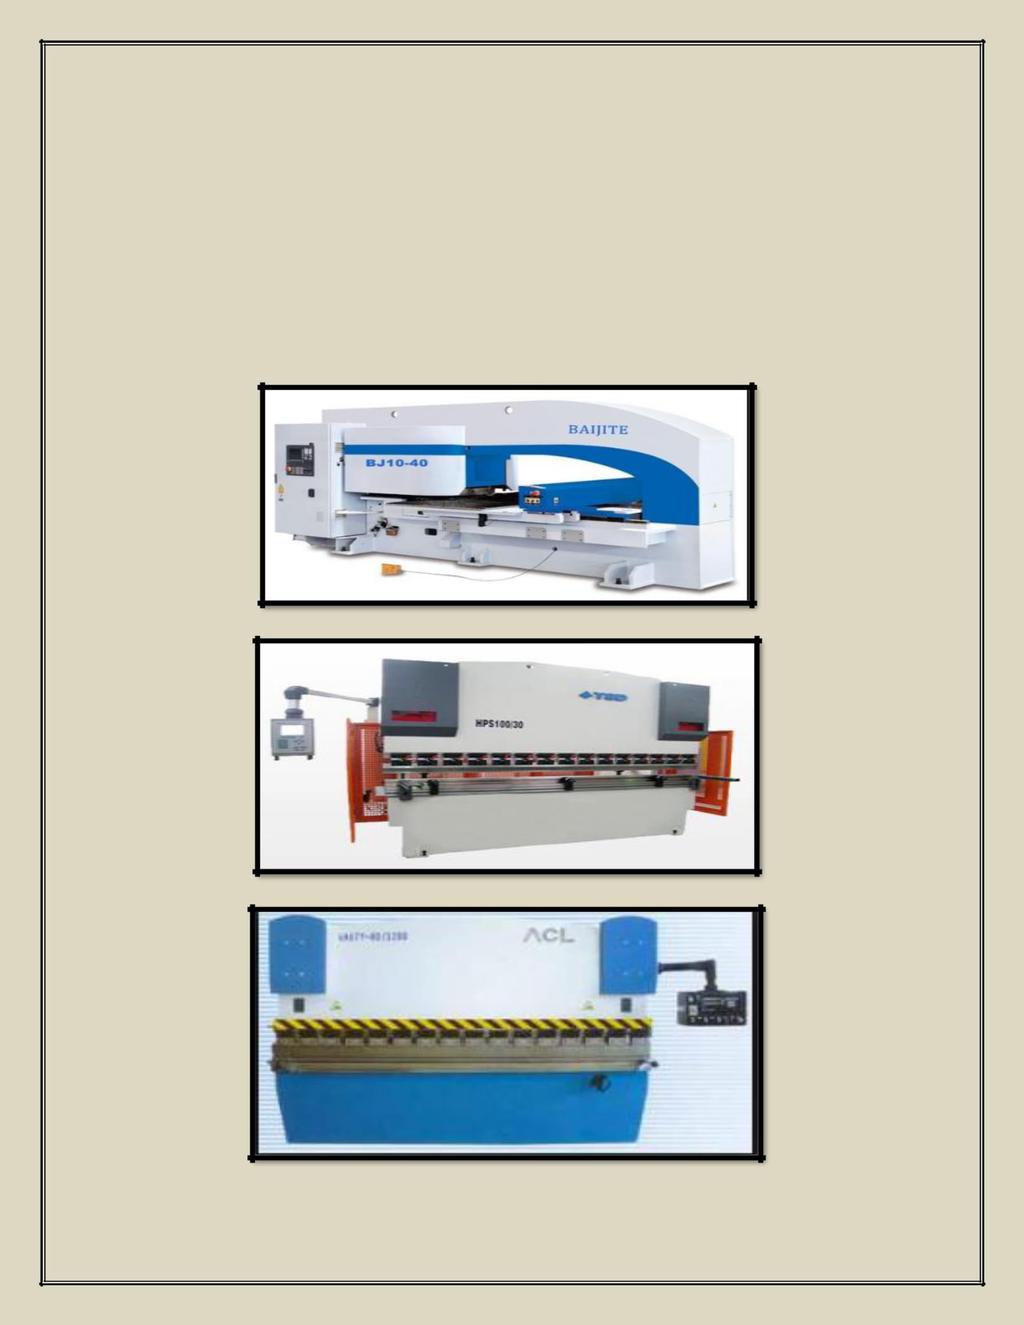 معدات التشكيل والتصنيع )الدائرية و المسطحة ( التي تستخدم في مجال تشكيل